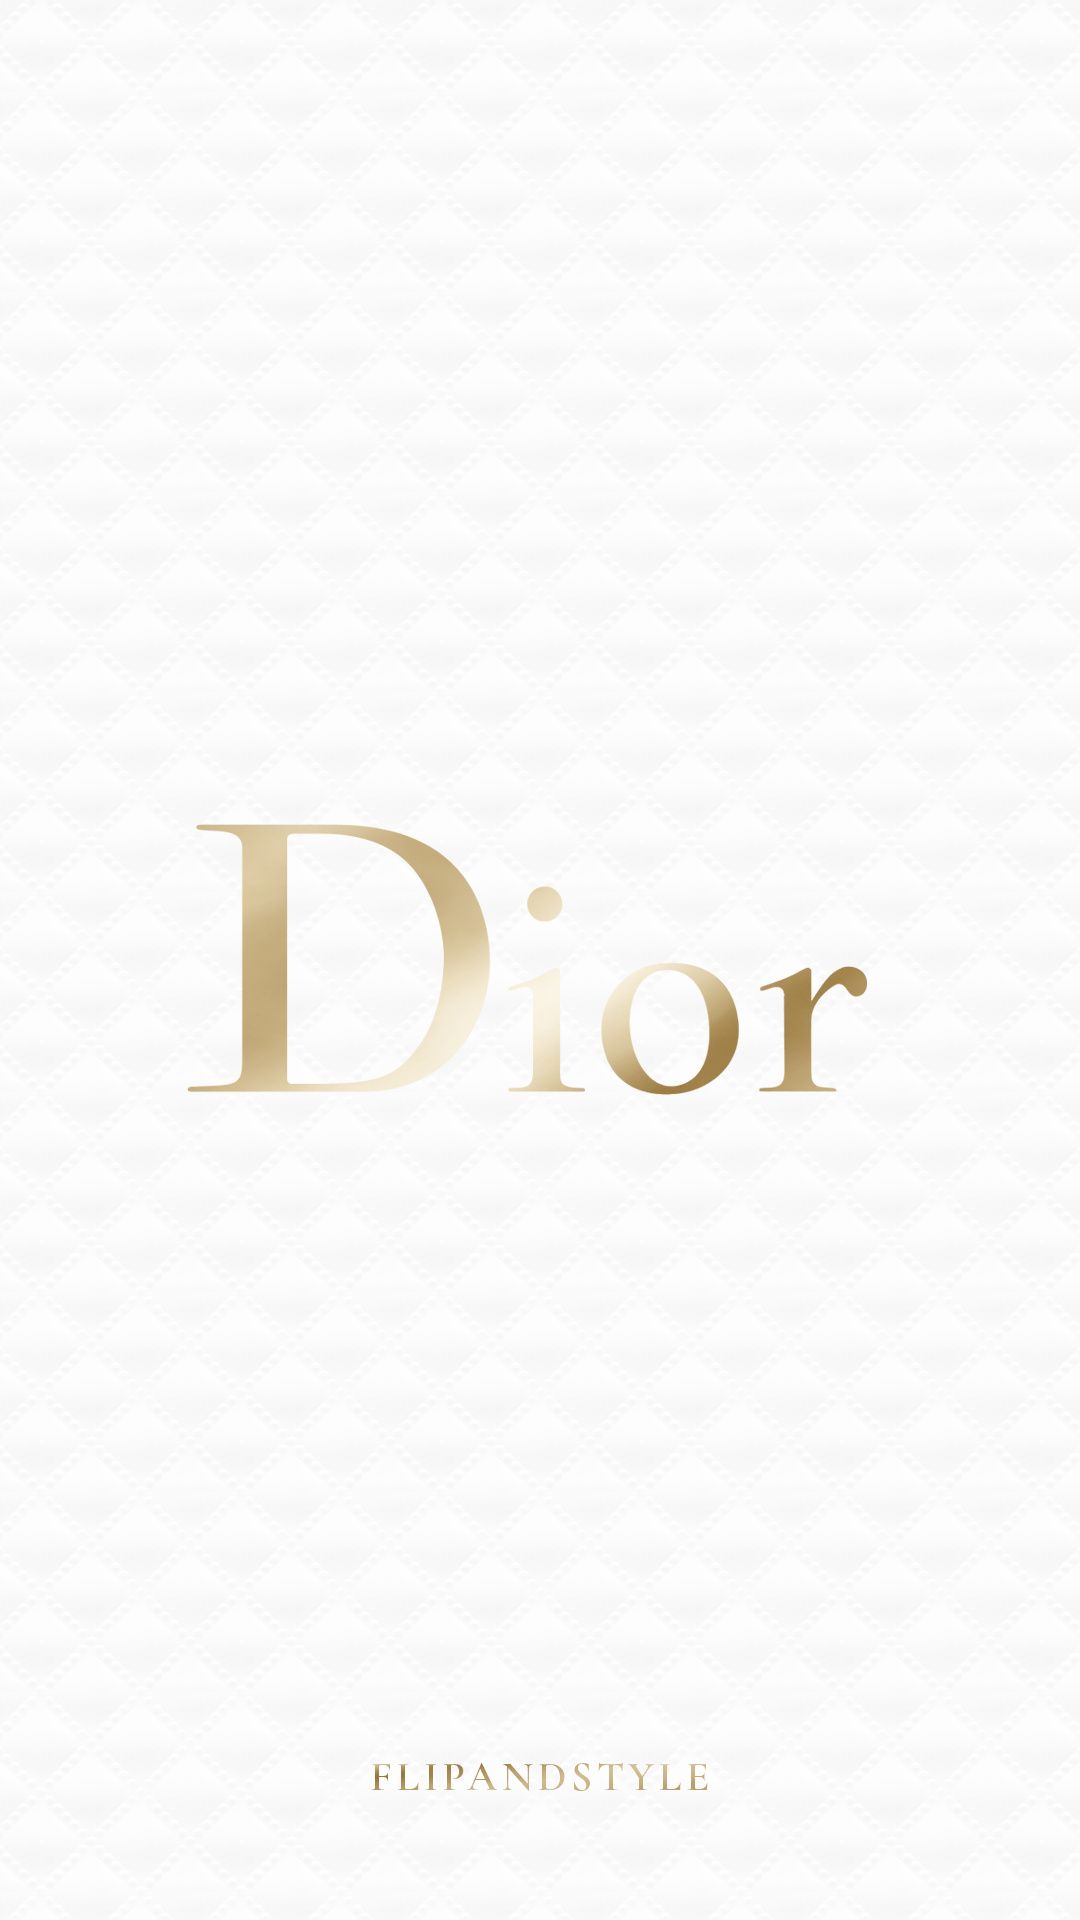 Dior Wallpaper (image inside)